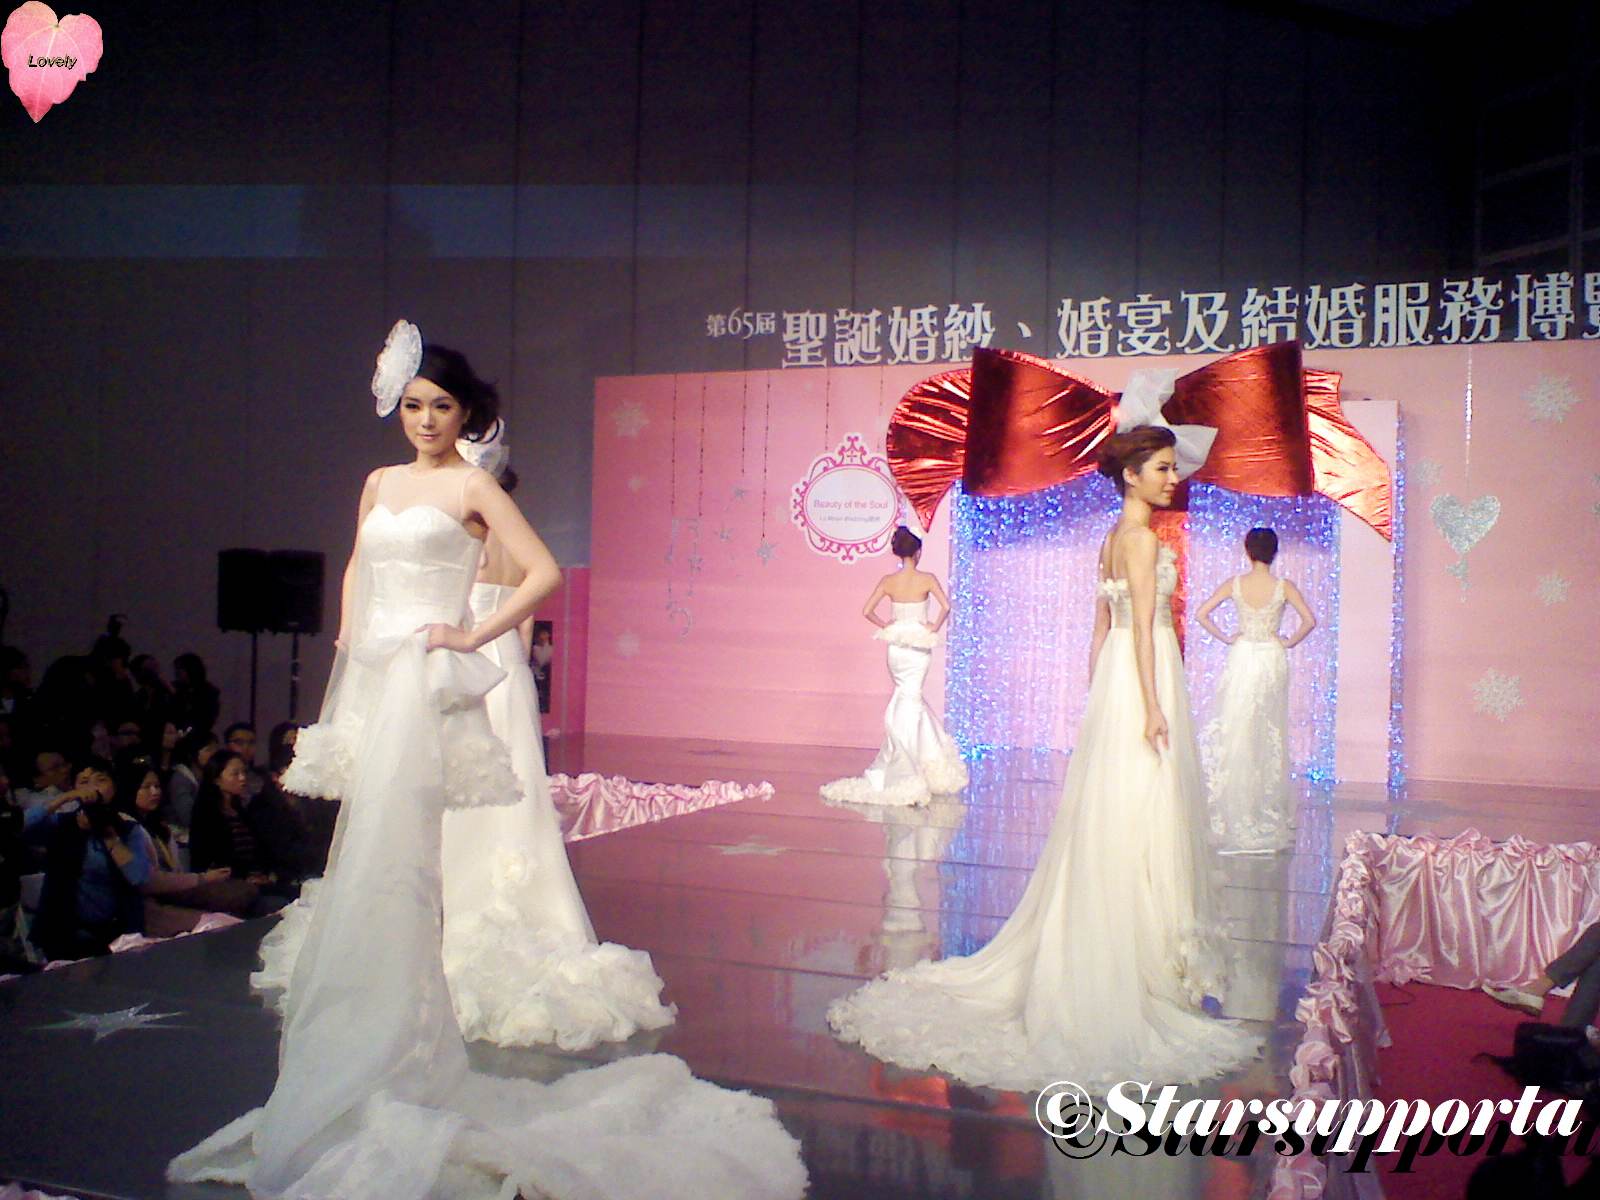 20111217 聖誔婚紗、婚宴及結婚服務博覽 - La Moon Wedding: Beauty of the Soul @ 香港會議展覽中心 HKCEC (video)